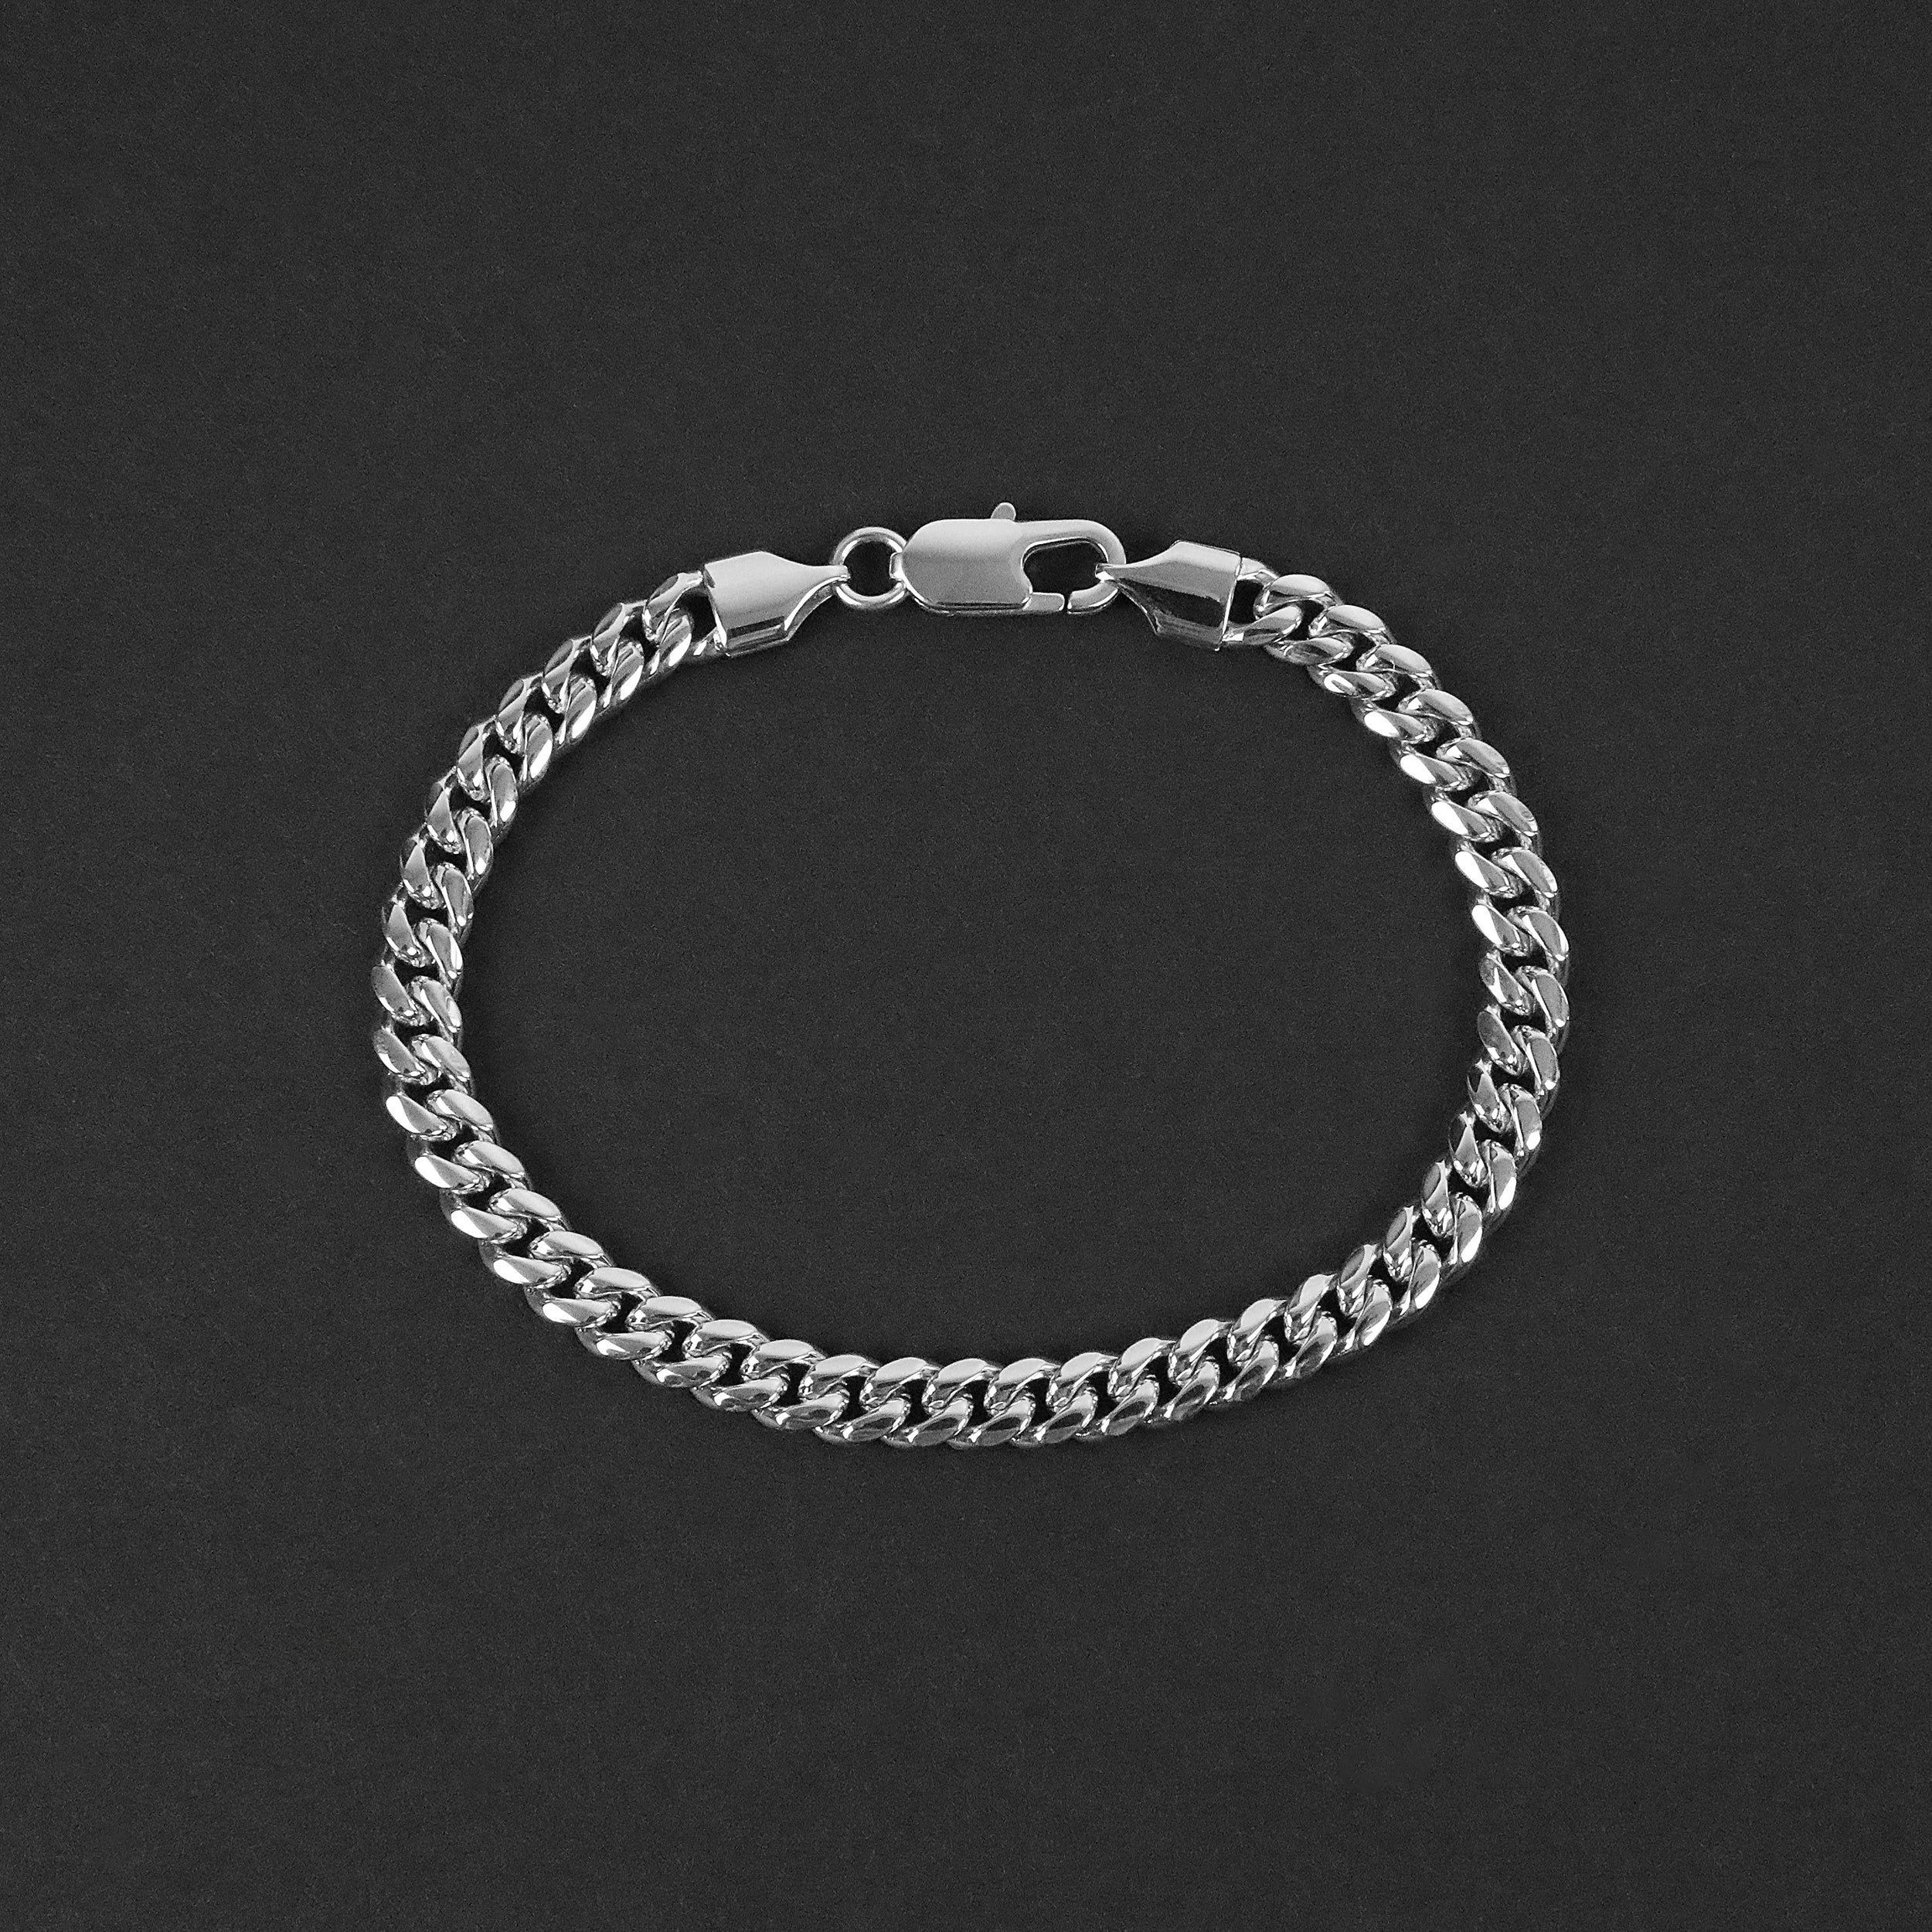 Cuban Chain Bracelet - Silver 6mm